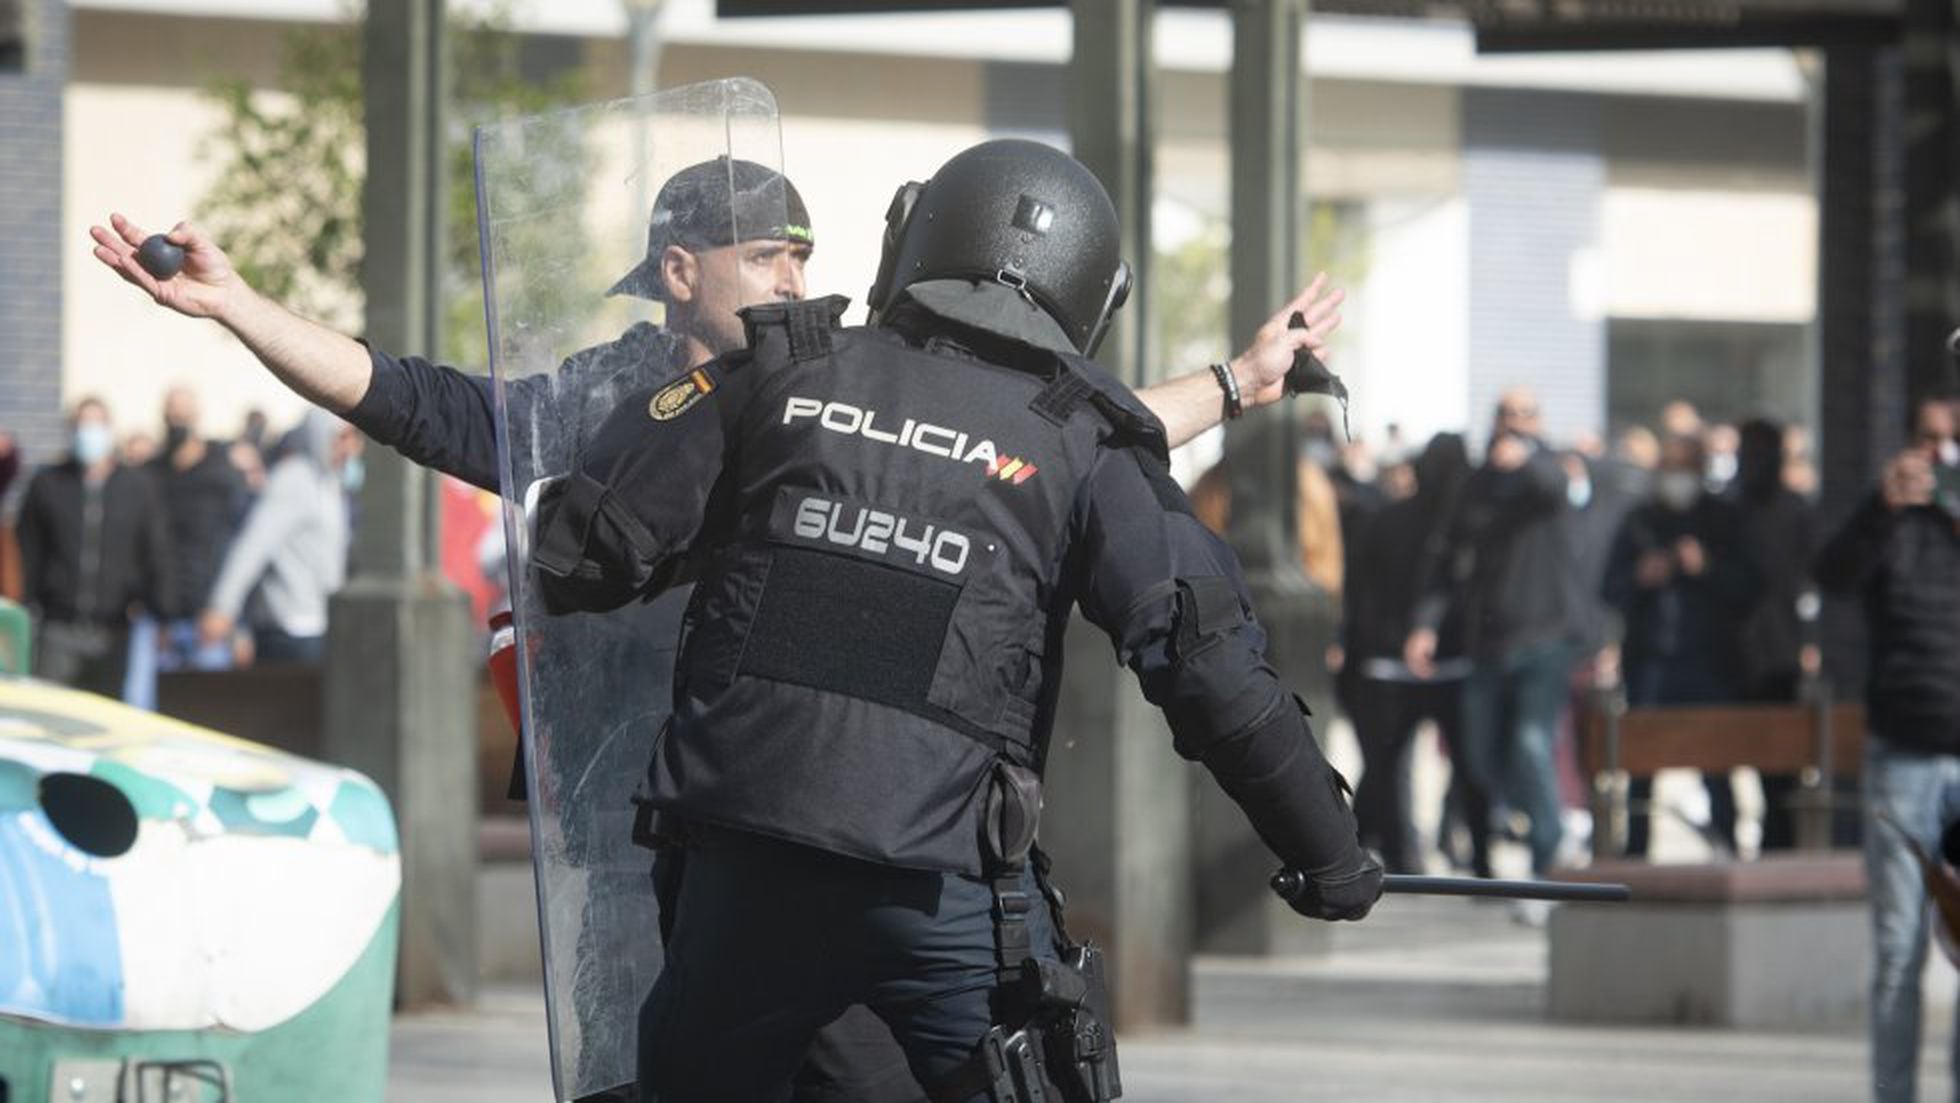 La Policía comenzará a utilizar porras extensibles de acero, España